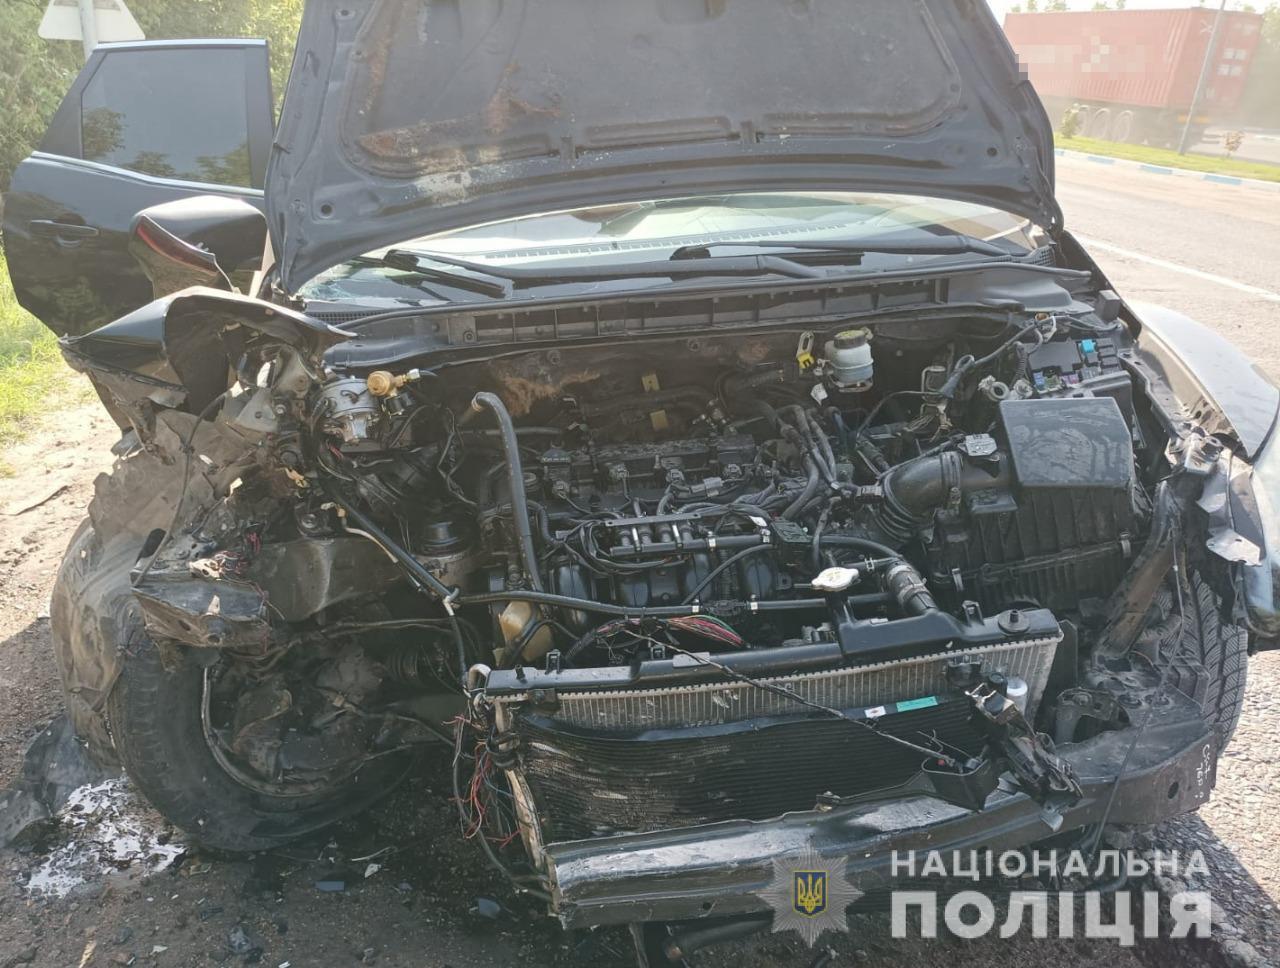 Поліцейські з’ясовують обставини ДТП на трасі Одеса-Кучурган